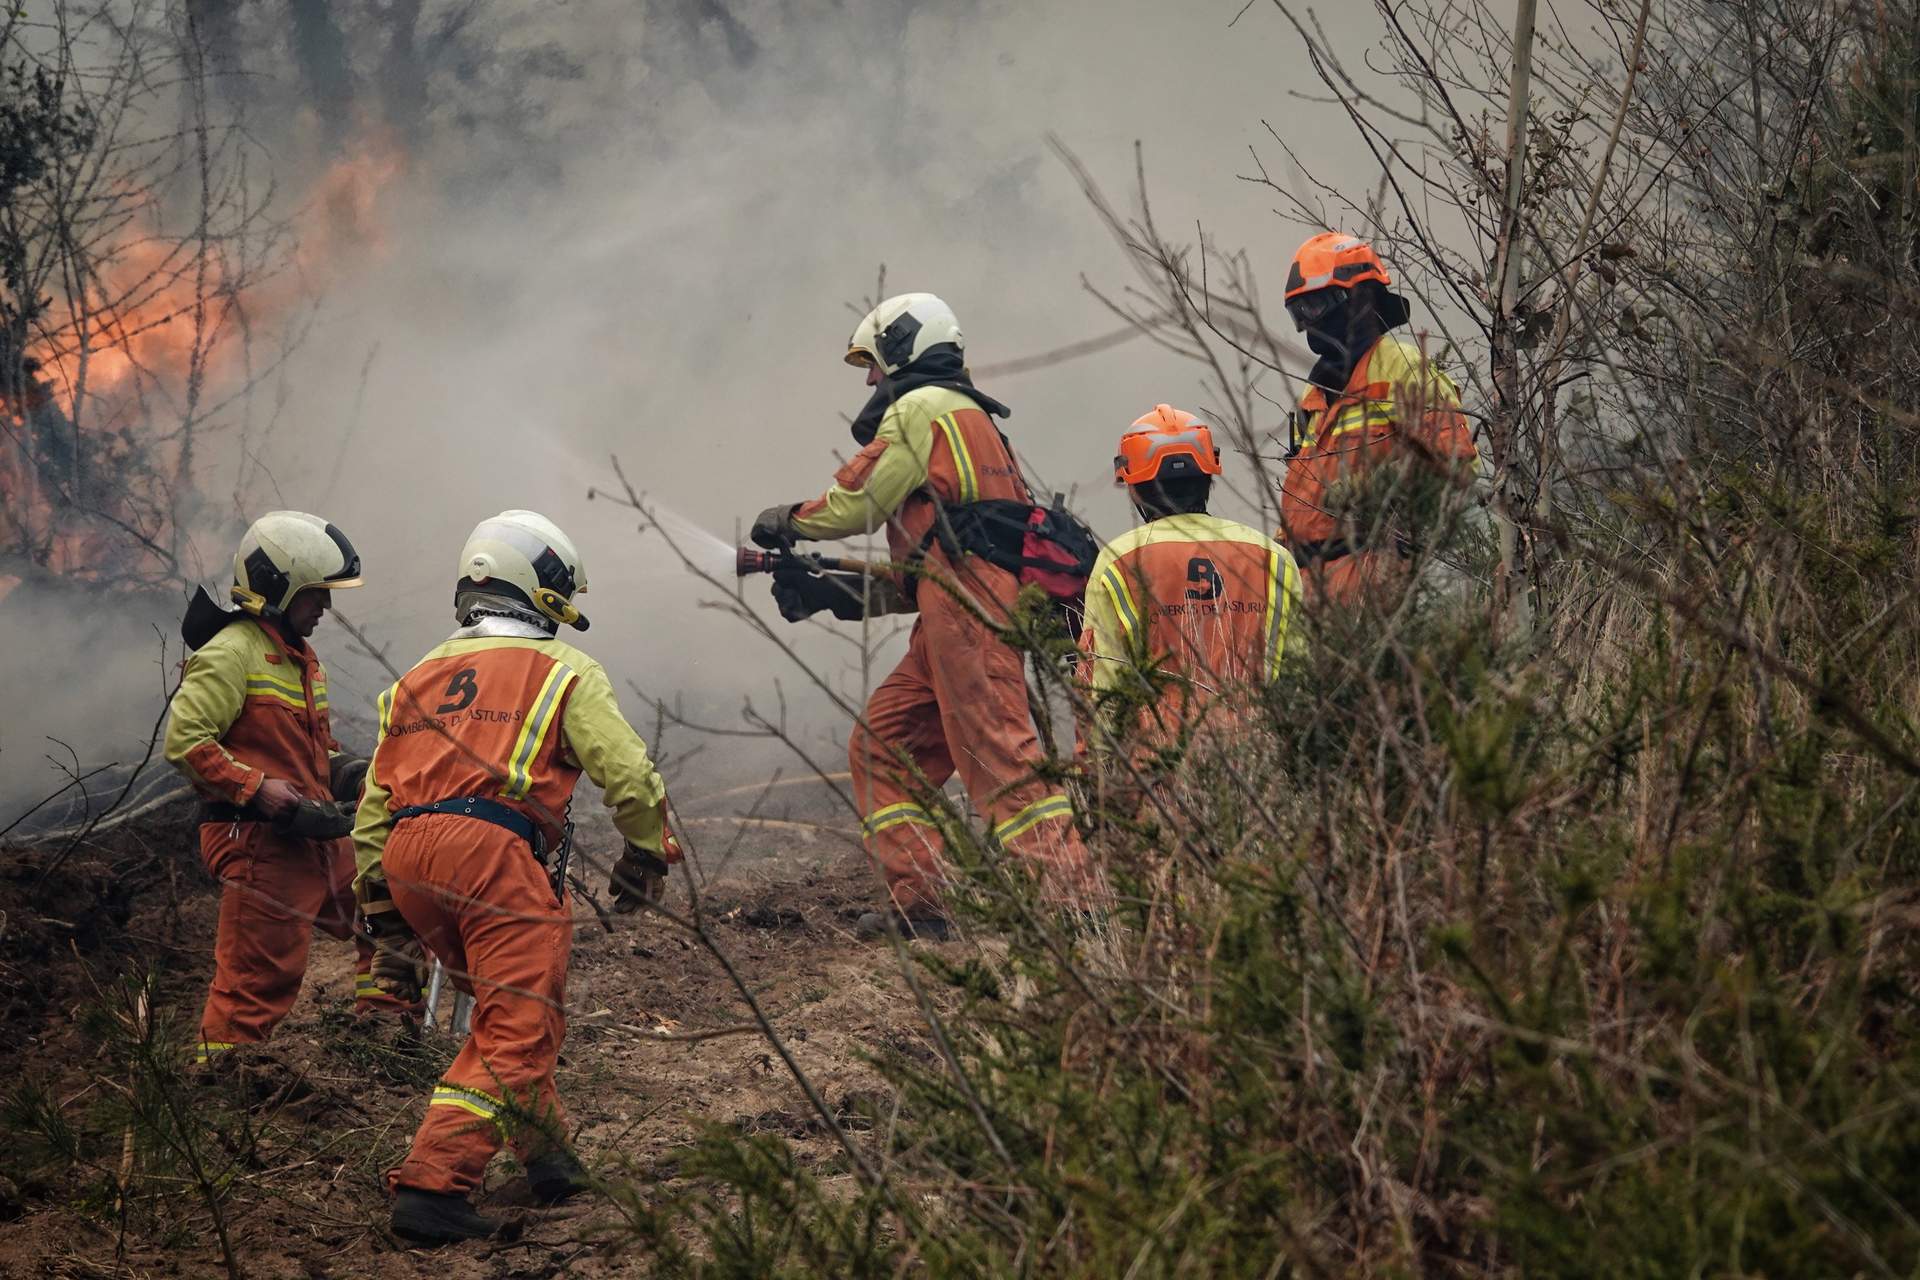 Imágenes de los incendios de los concejos de Valdes y Tineo (Asturias)
30/3/23
Foto Xuan Cueto.